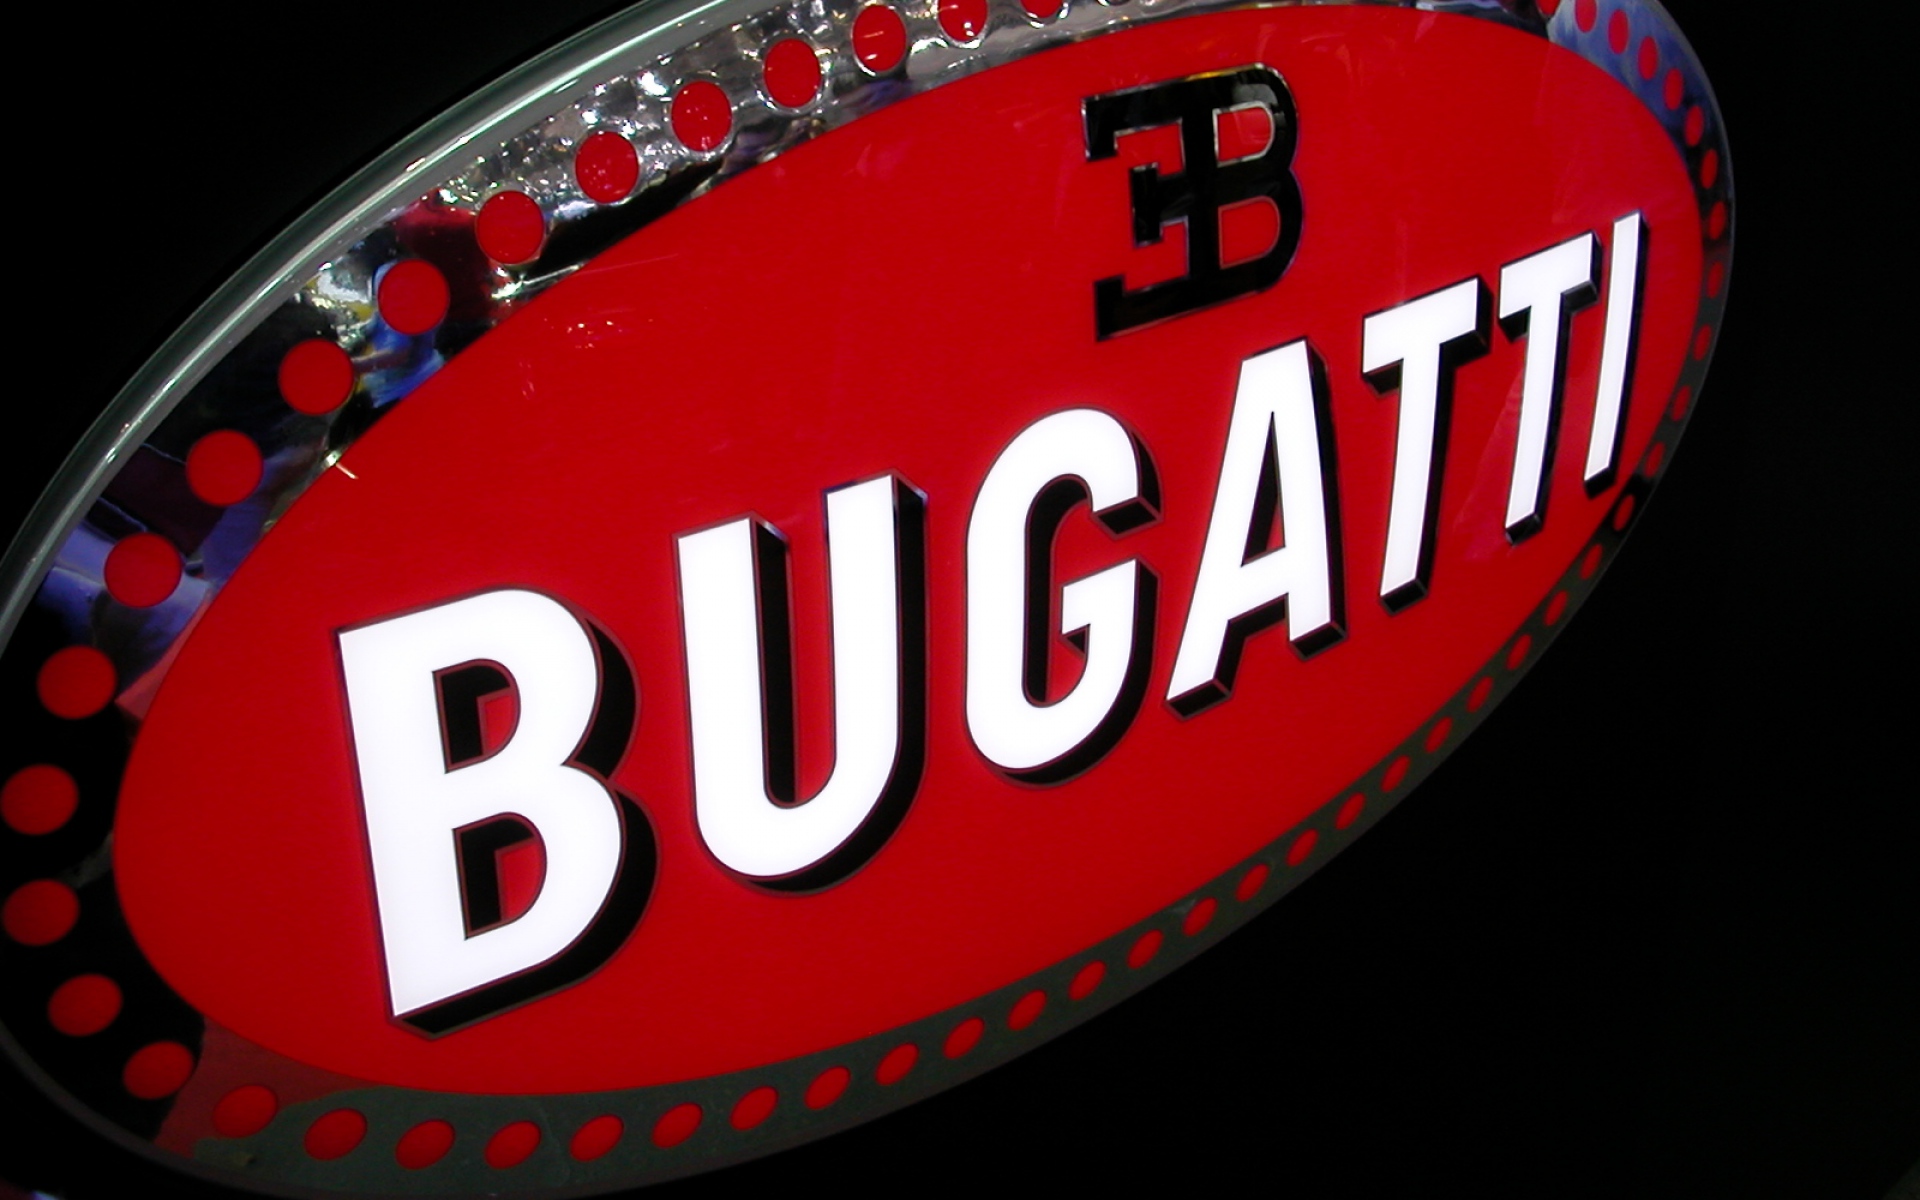 Картинки Bugatti, бренд, логотип фото и обои на рабочий стол